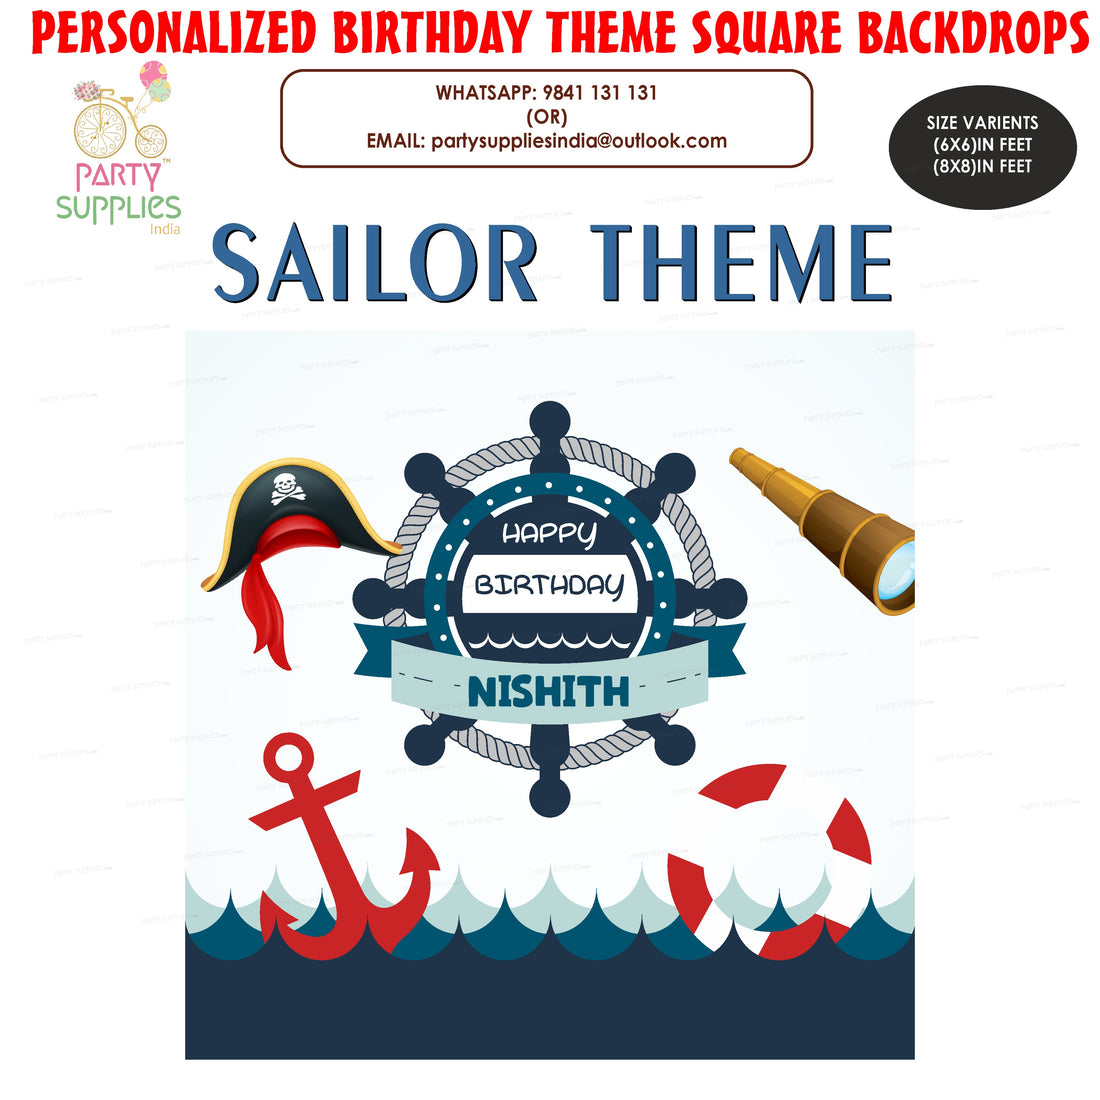 PSI Sailor Theme Square Backdrop